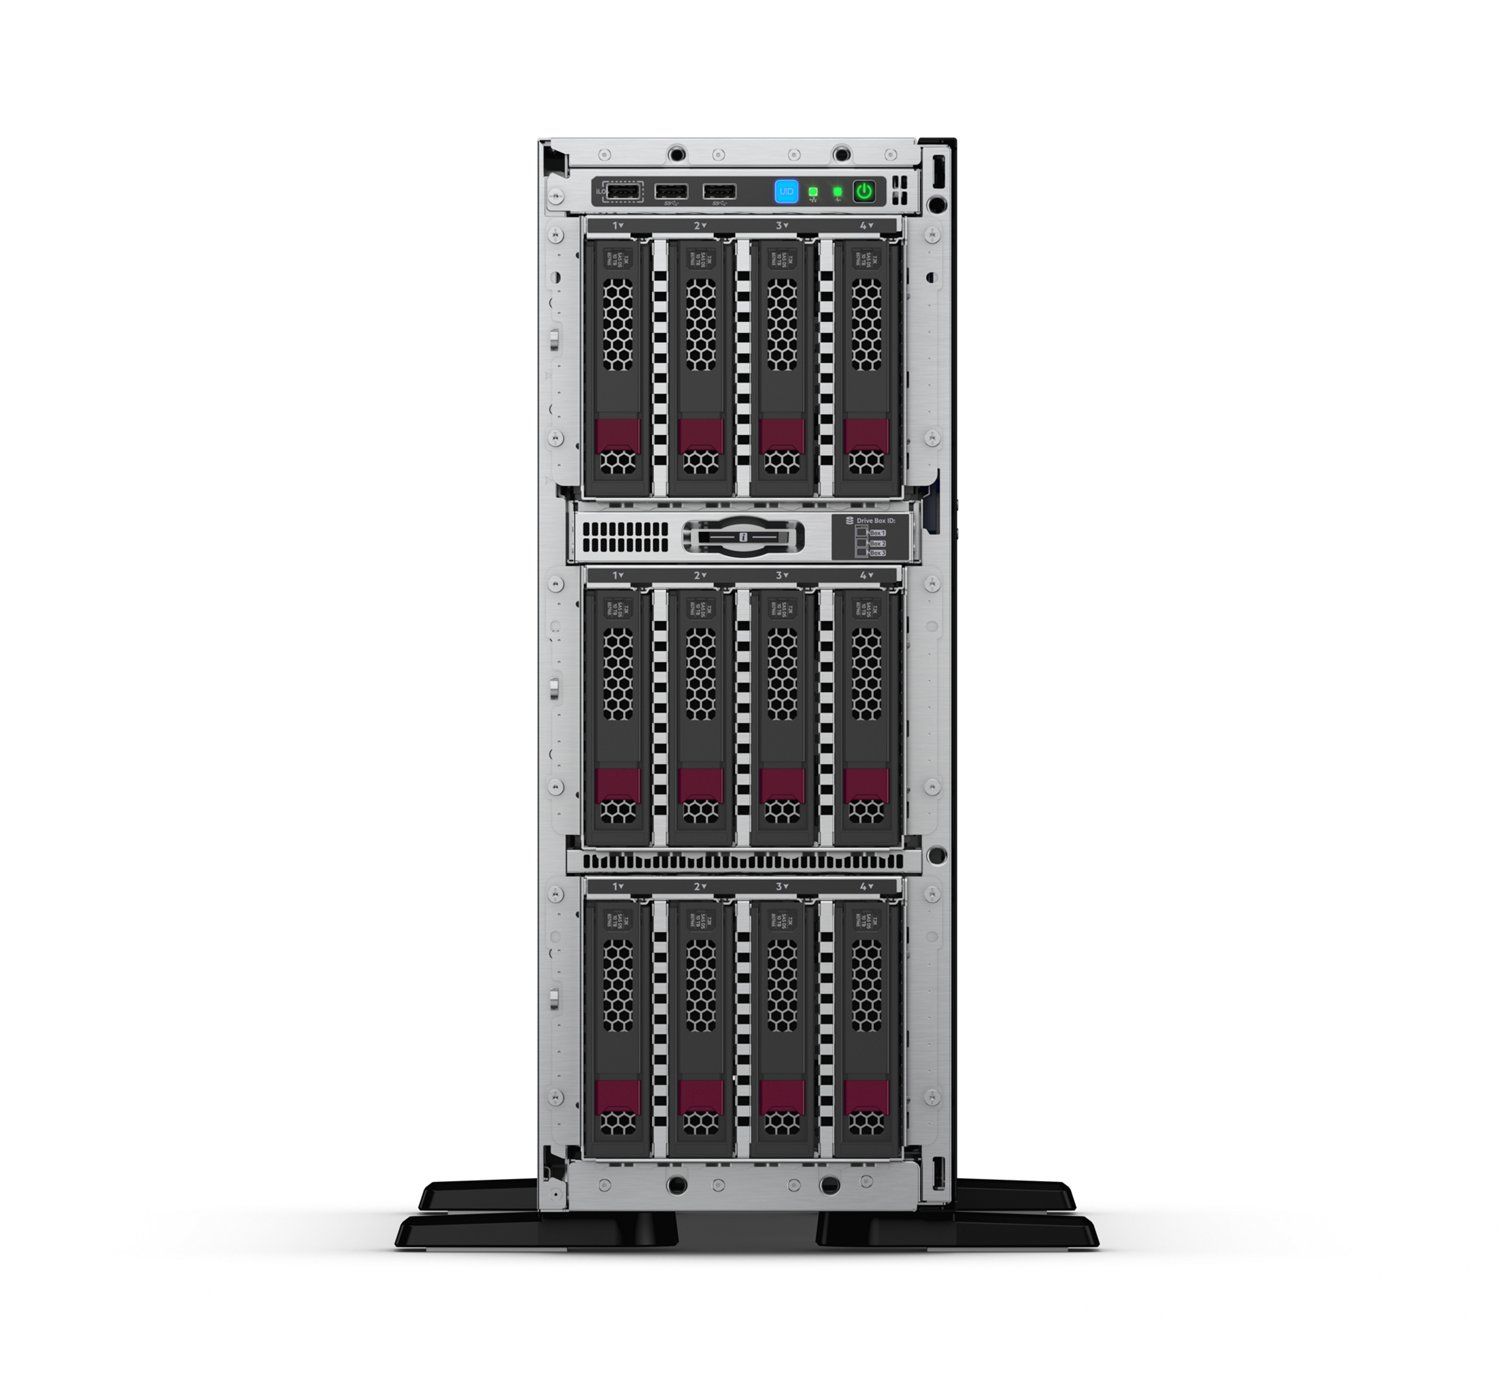 Server HPE ProLiant ML350 Gen10 Tower Intel Xeon Silver 4208, 8C / 16T, 2.1 GHz base, 3.2 GHz turbo, 11 MB cache, 85 W, 16 GB DDR4, Fara HDD, 4 x LFF, 500 W_6